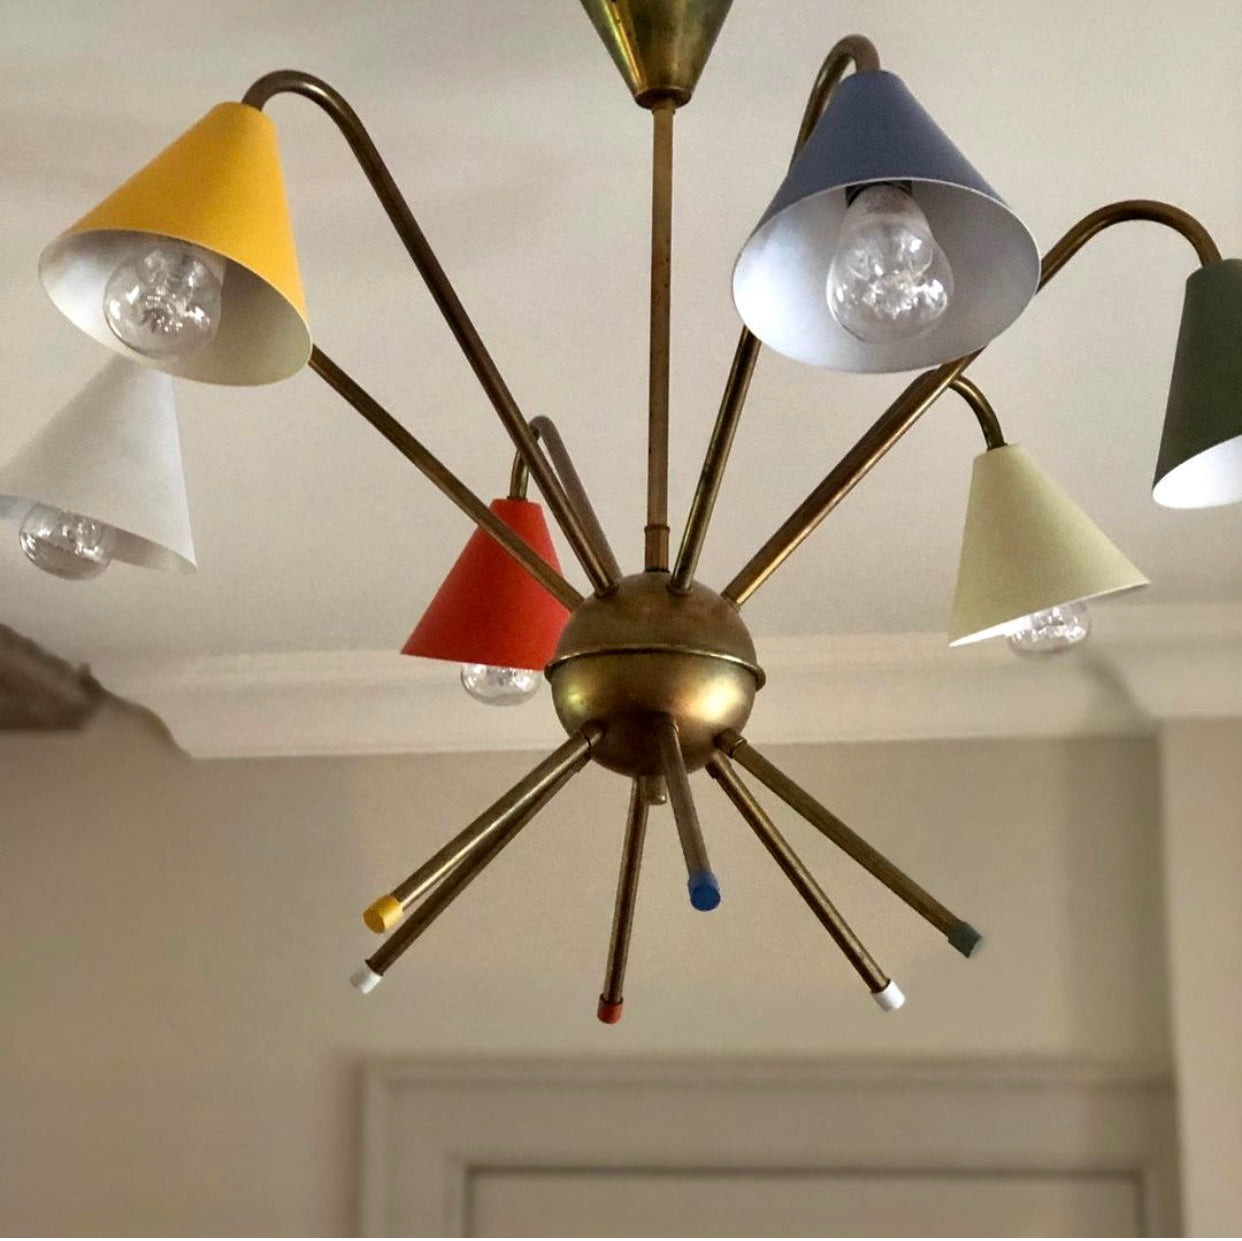 An Italian Sputnik/Atomic style chandelier